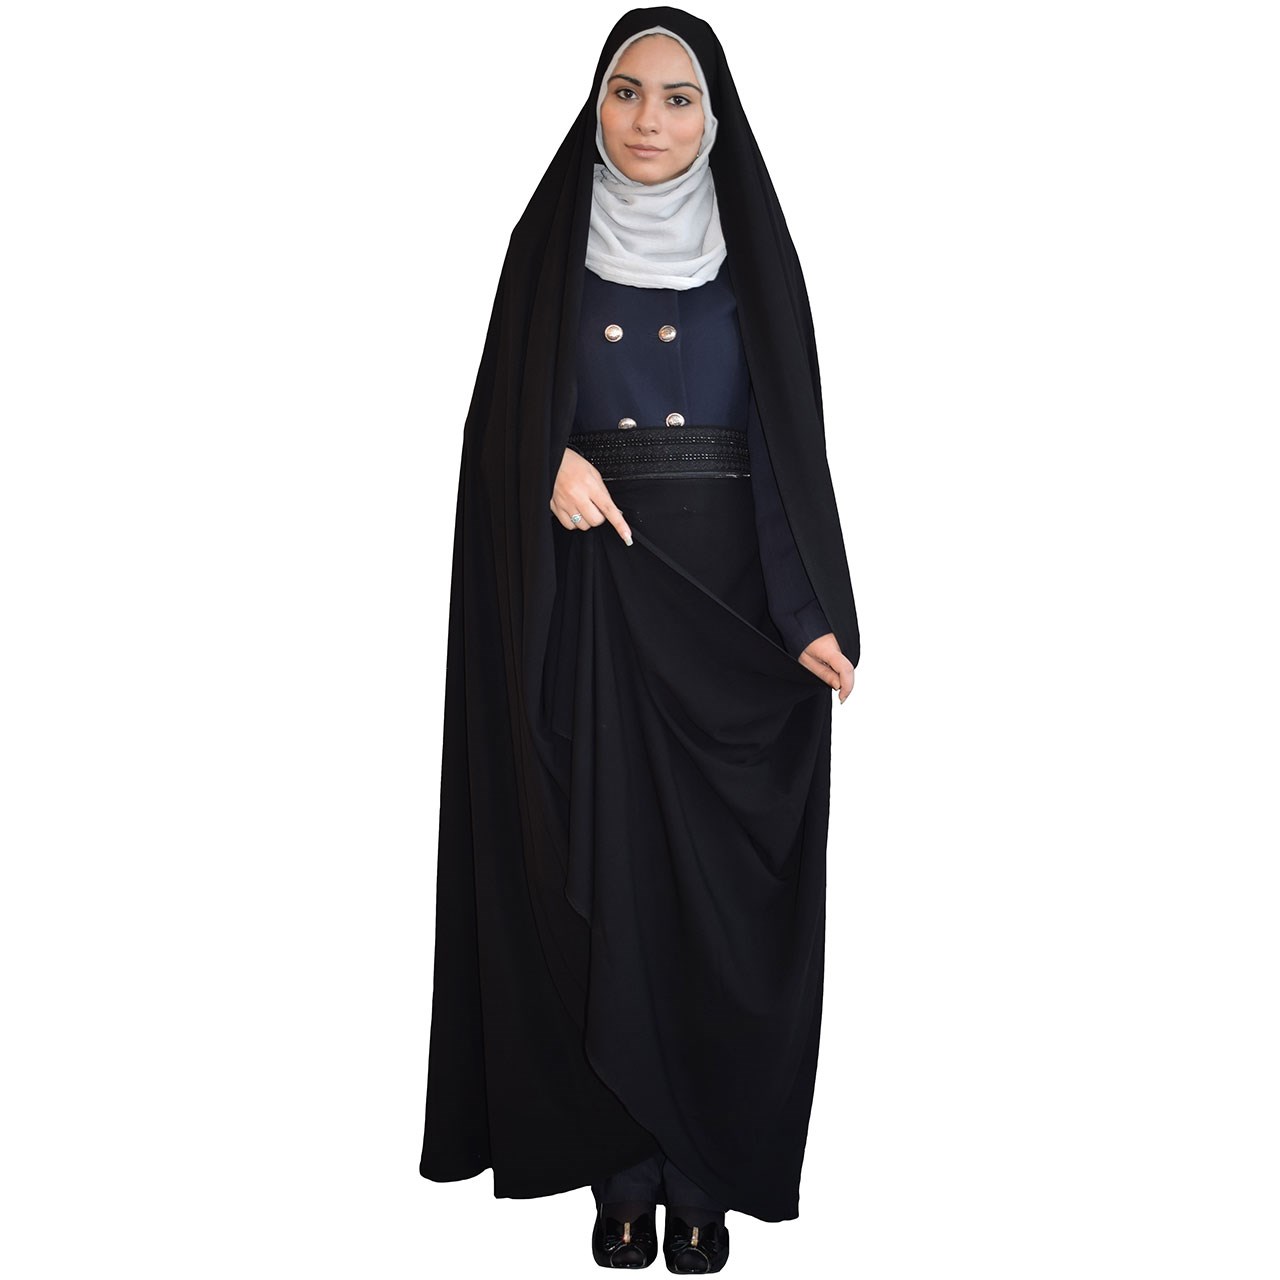 چادر درین حجاب فاطمی مدل 201159kr